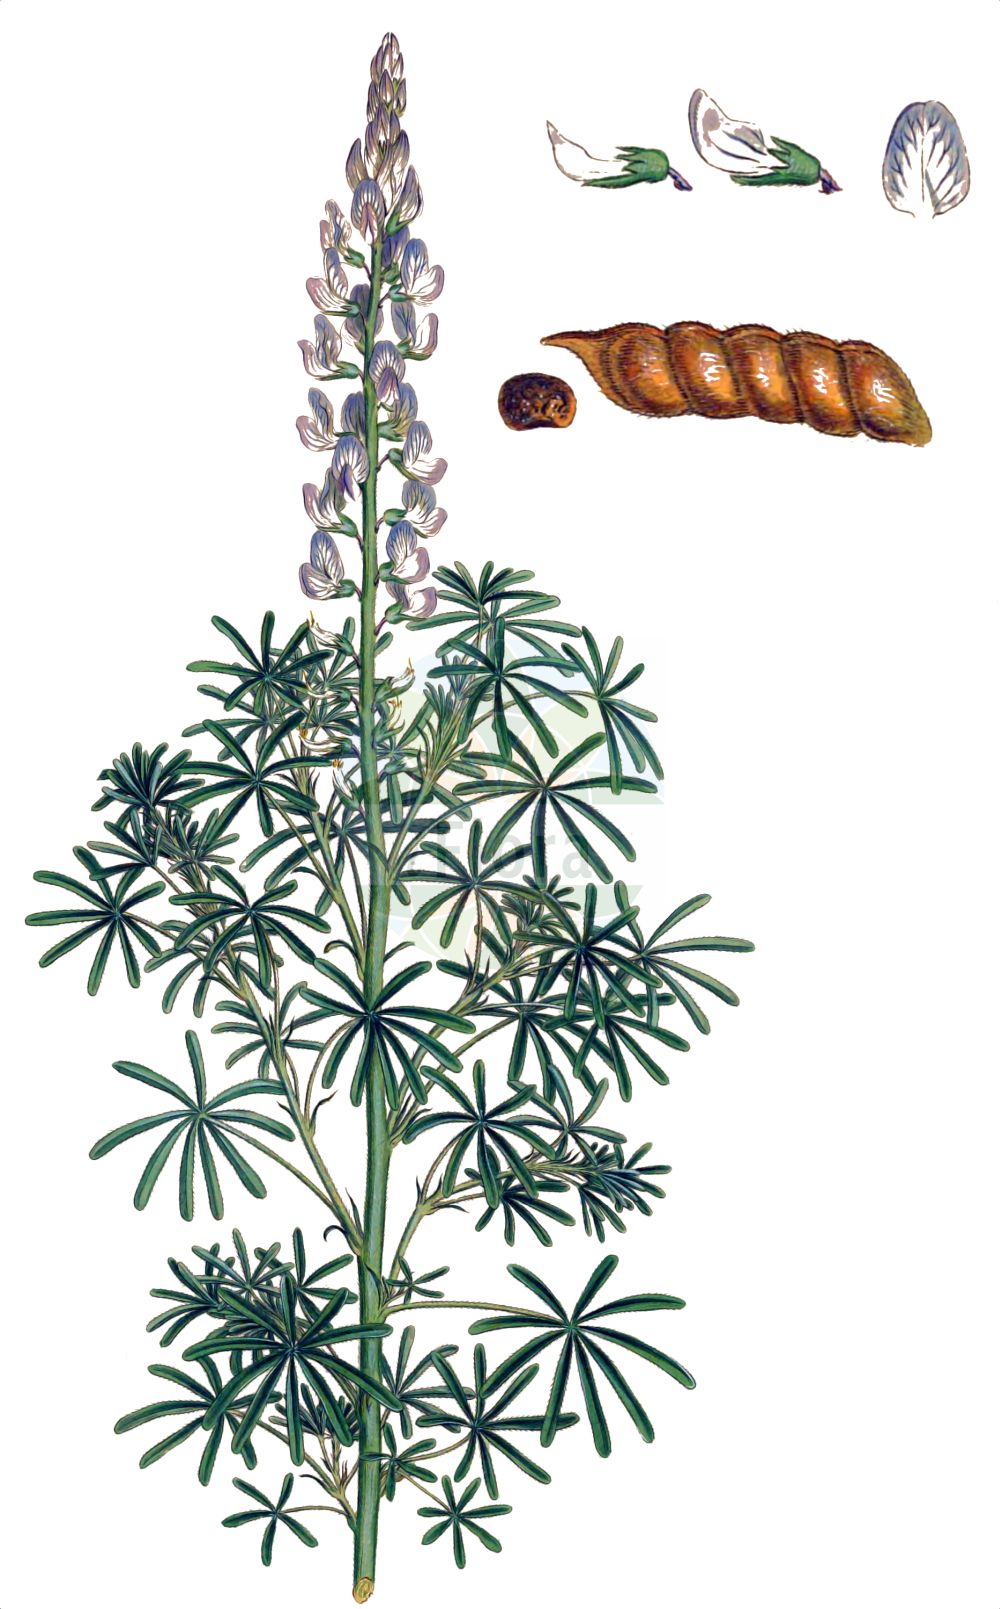 Historische Abbildung von Lupinus angustifolius (Blaue Lupine - Narrow-leaved Lupin). Das Bild zeigt Blatt, Bluete, Frucht und Same. ---- Historical Drawing of Lupinus angustifolius (Blaue Lupine - Narrow-leaved Lupin). The image is showing leaf, flower, fruit and seed.(Lupinus angustifolius,Blaue Lupine,Narrow-leaved Lupin,Lupinus angustifolius,Blaue Lupine,Schmalblaettrige Lupine,Narrow-leaved Lupin,Blue Lupin,Narrowleaf Lupine,Blue Lupine,Annual Lupin,Foxtail Lupin,Lupinus,Lupine,Lupine,Fabaceae,Schmetterlingsblütler,Pea family,Blatt,Bluete,Frucht,Same,leaf,flower,fruit,seed,Sibthorp & Smith (1806-1840))